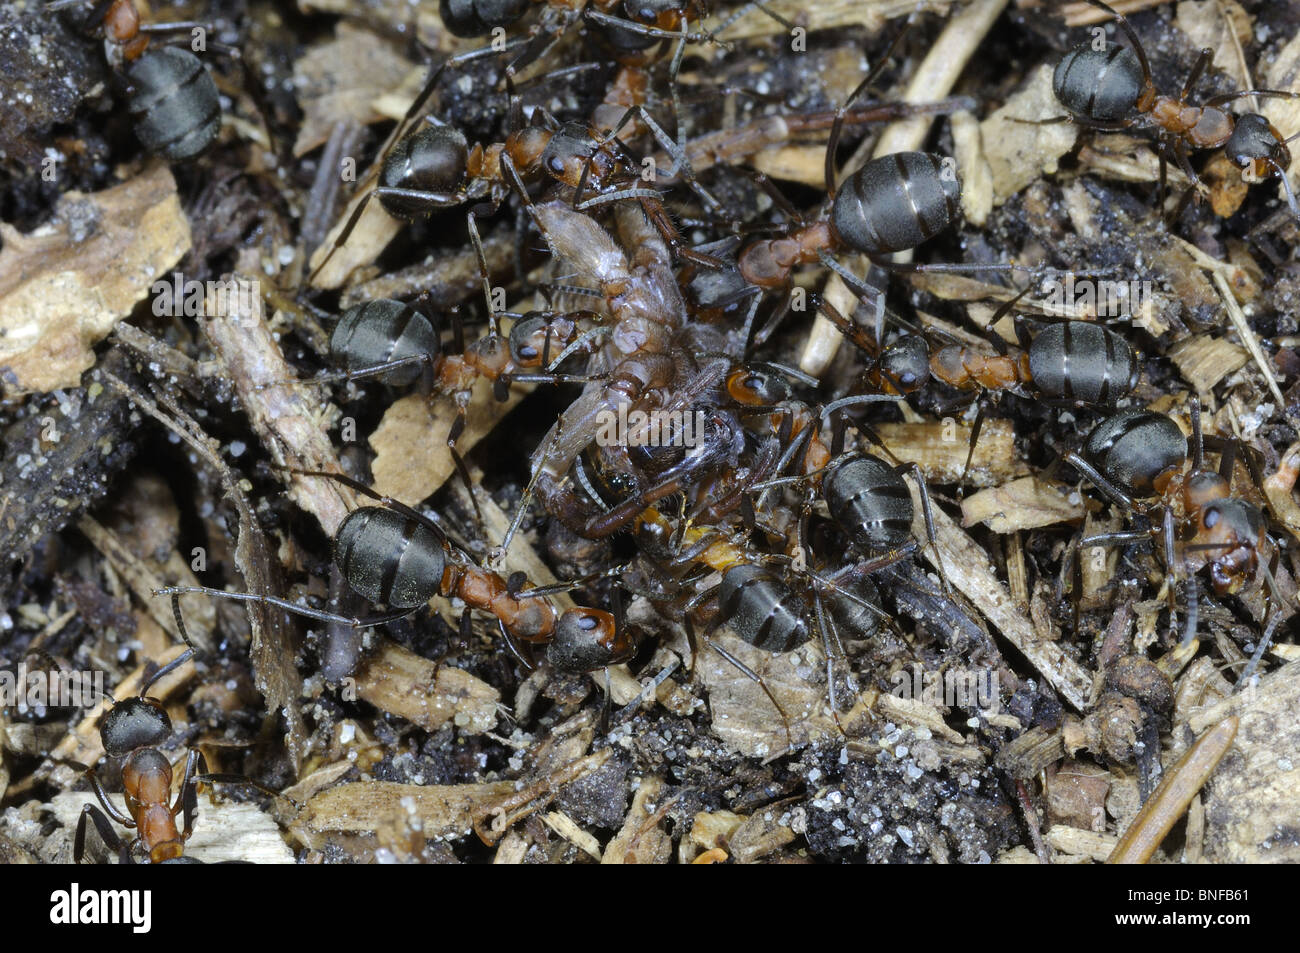 Sur de hormigas de madera roja (Formica rufa) atacando a una araña en el hormiguero Foto de stock